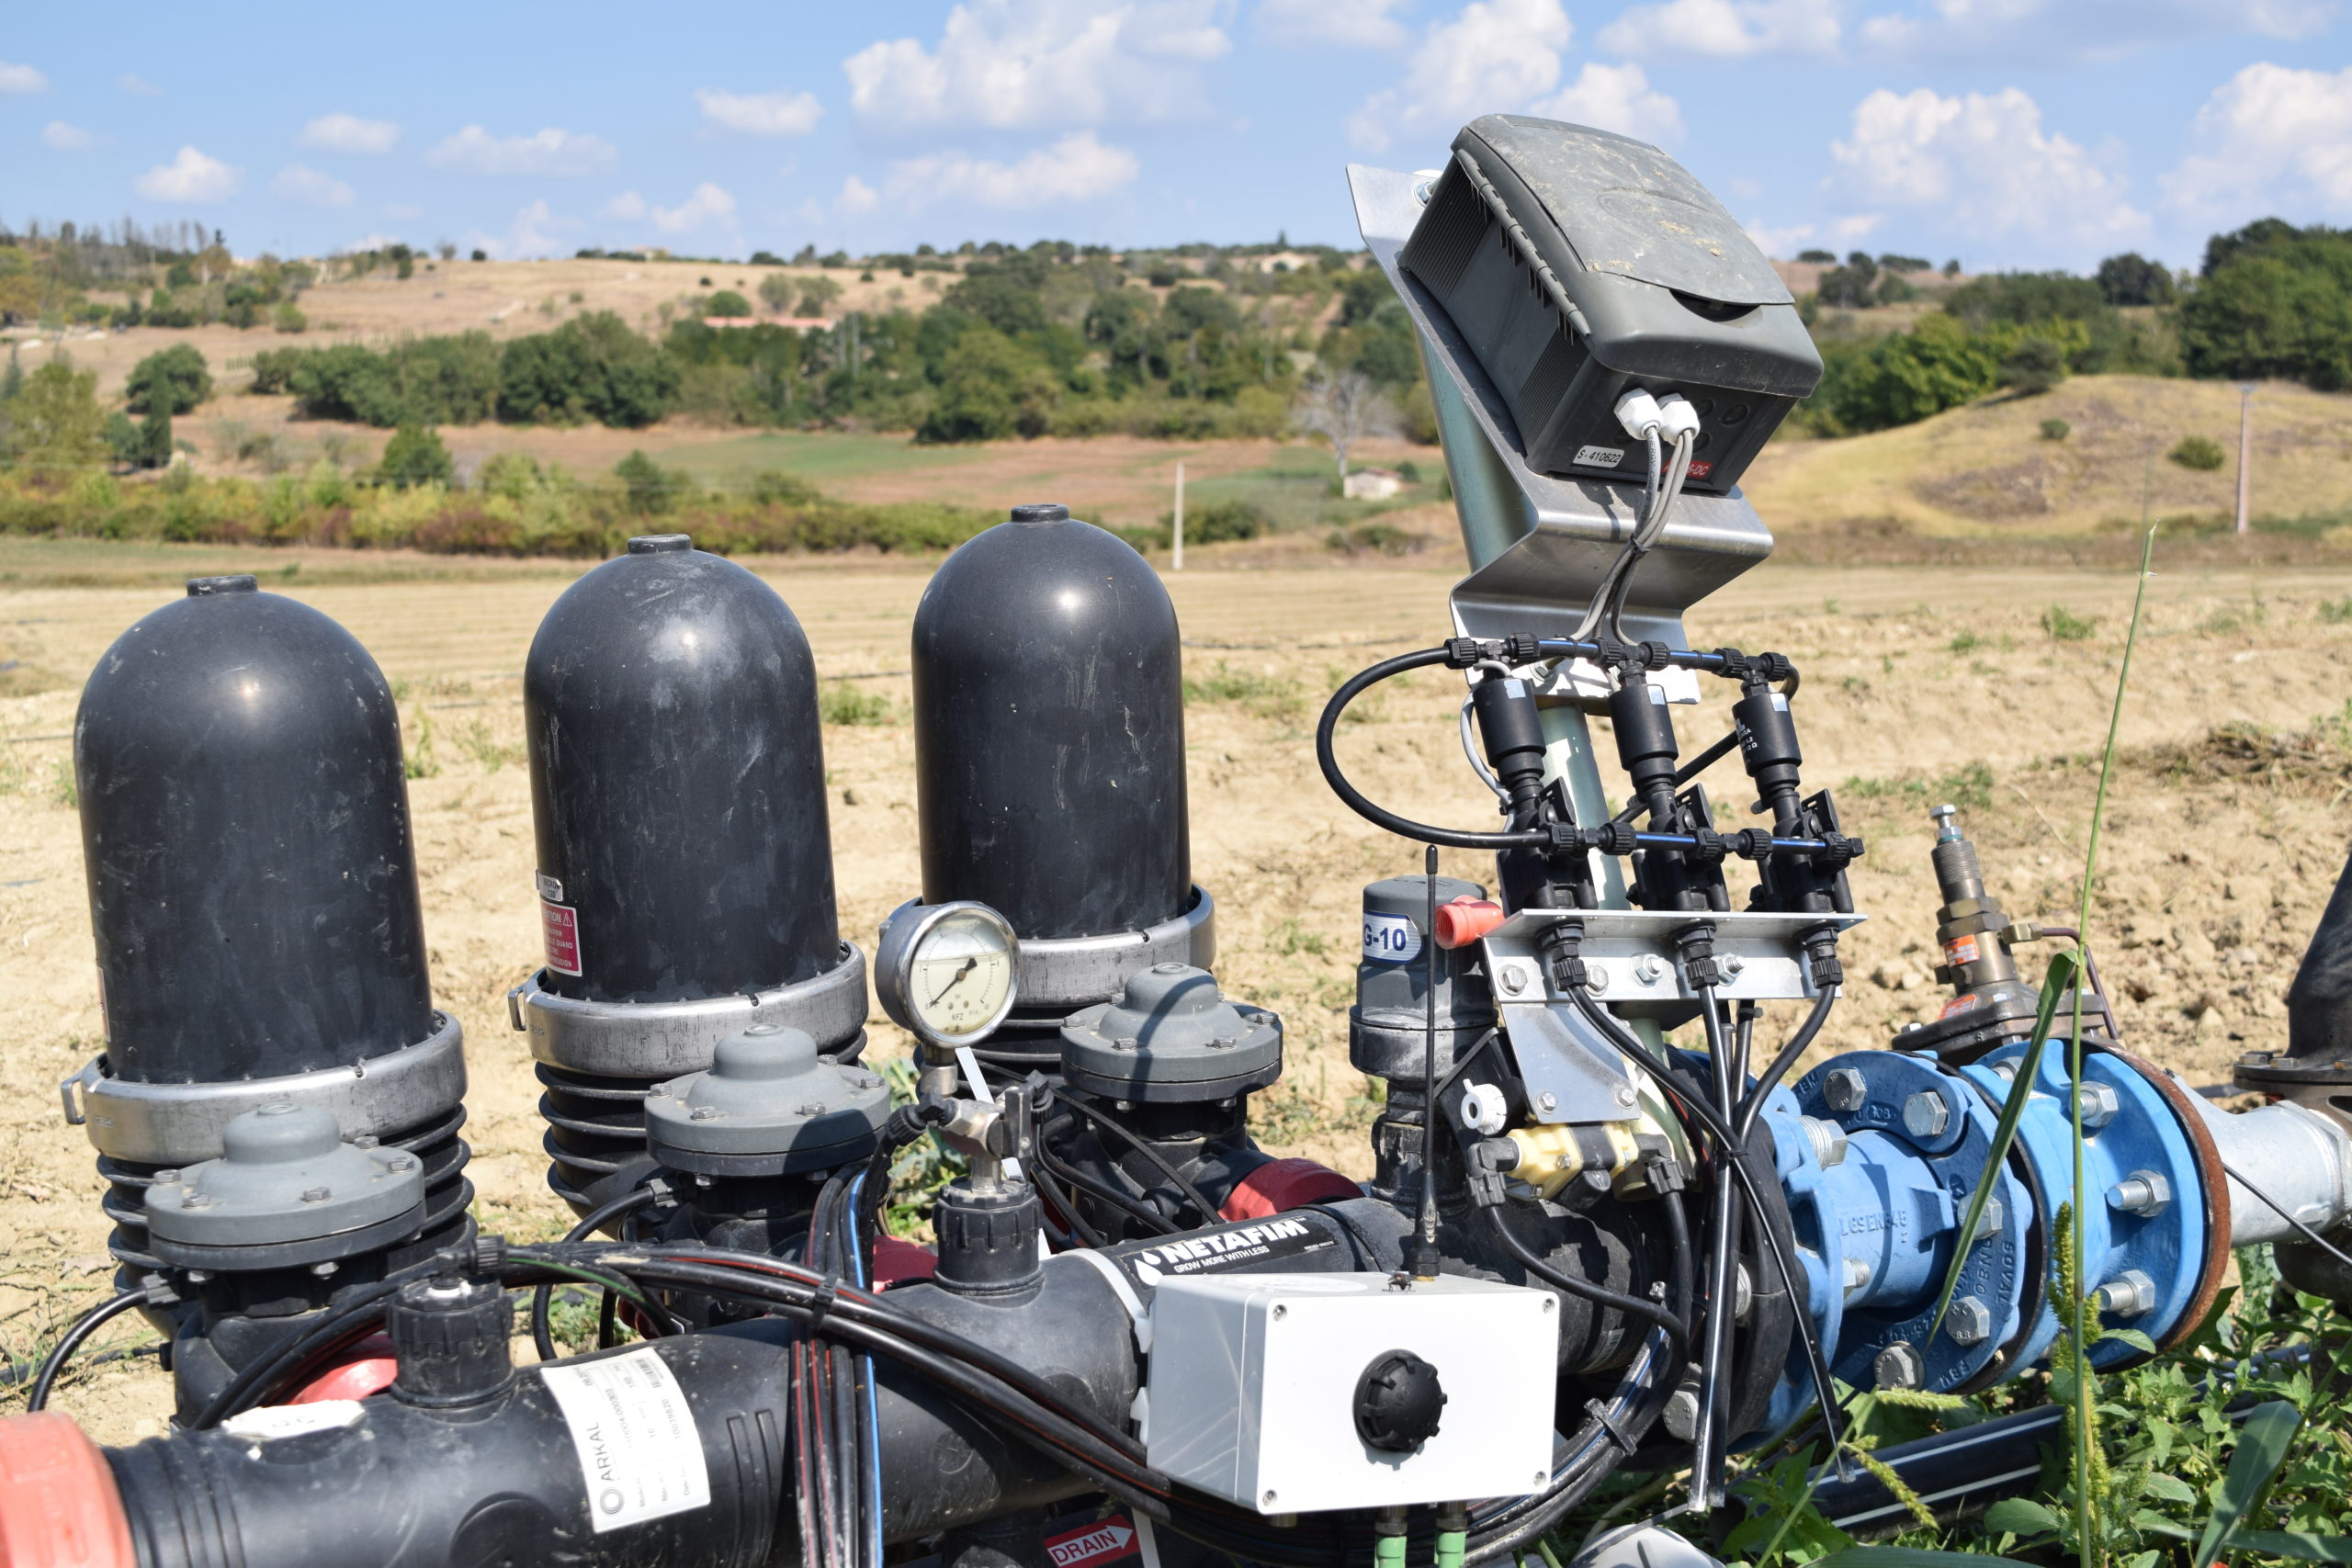 Les capteurs (agromote et capteurs de pressions) ont été installés sur le système d'irrigation "amovible" Telaqua pastèque